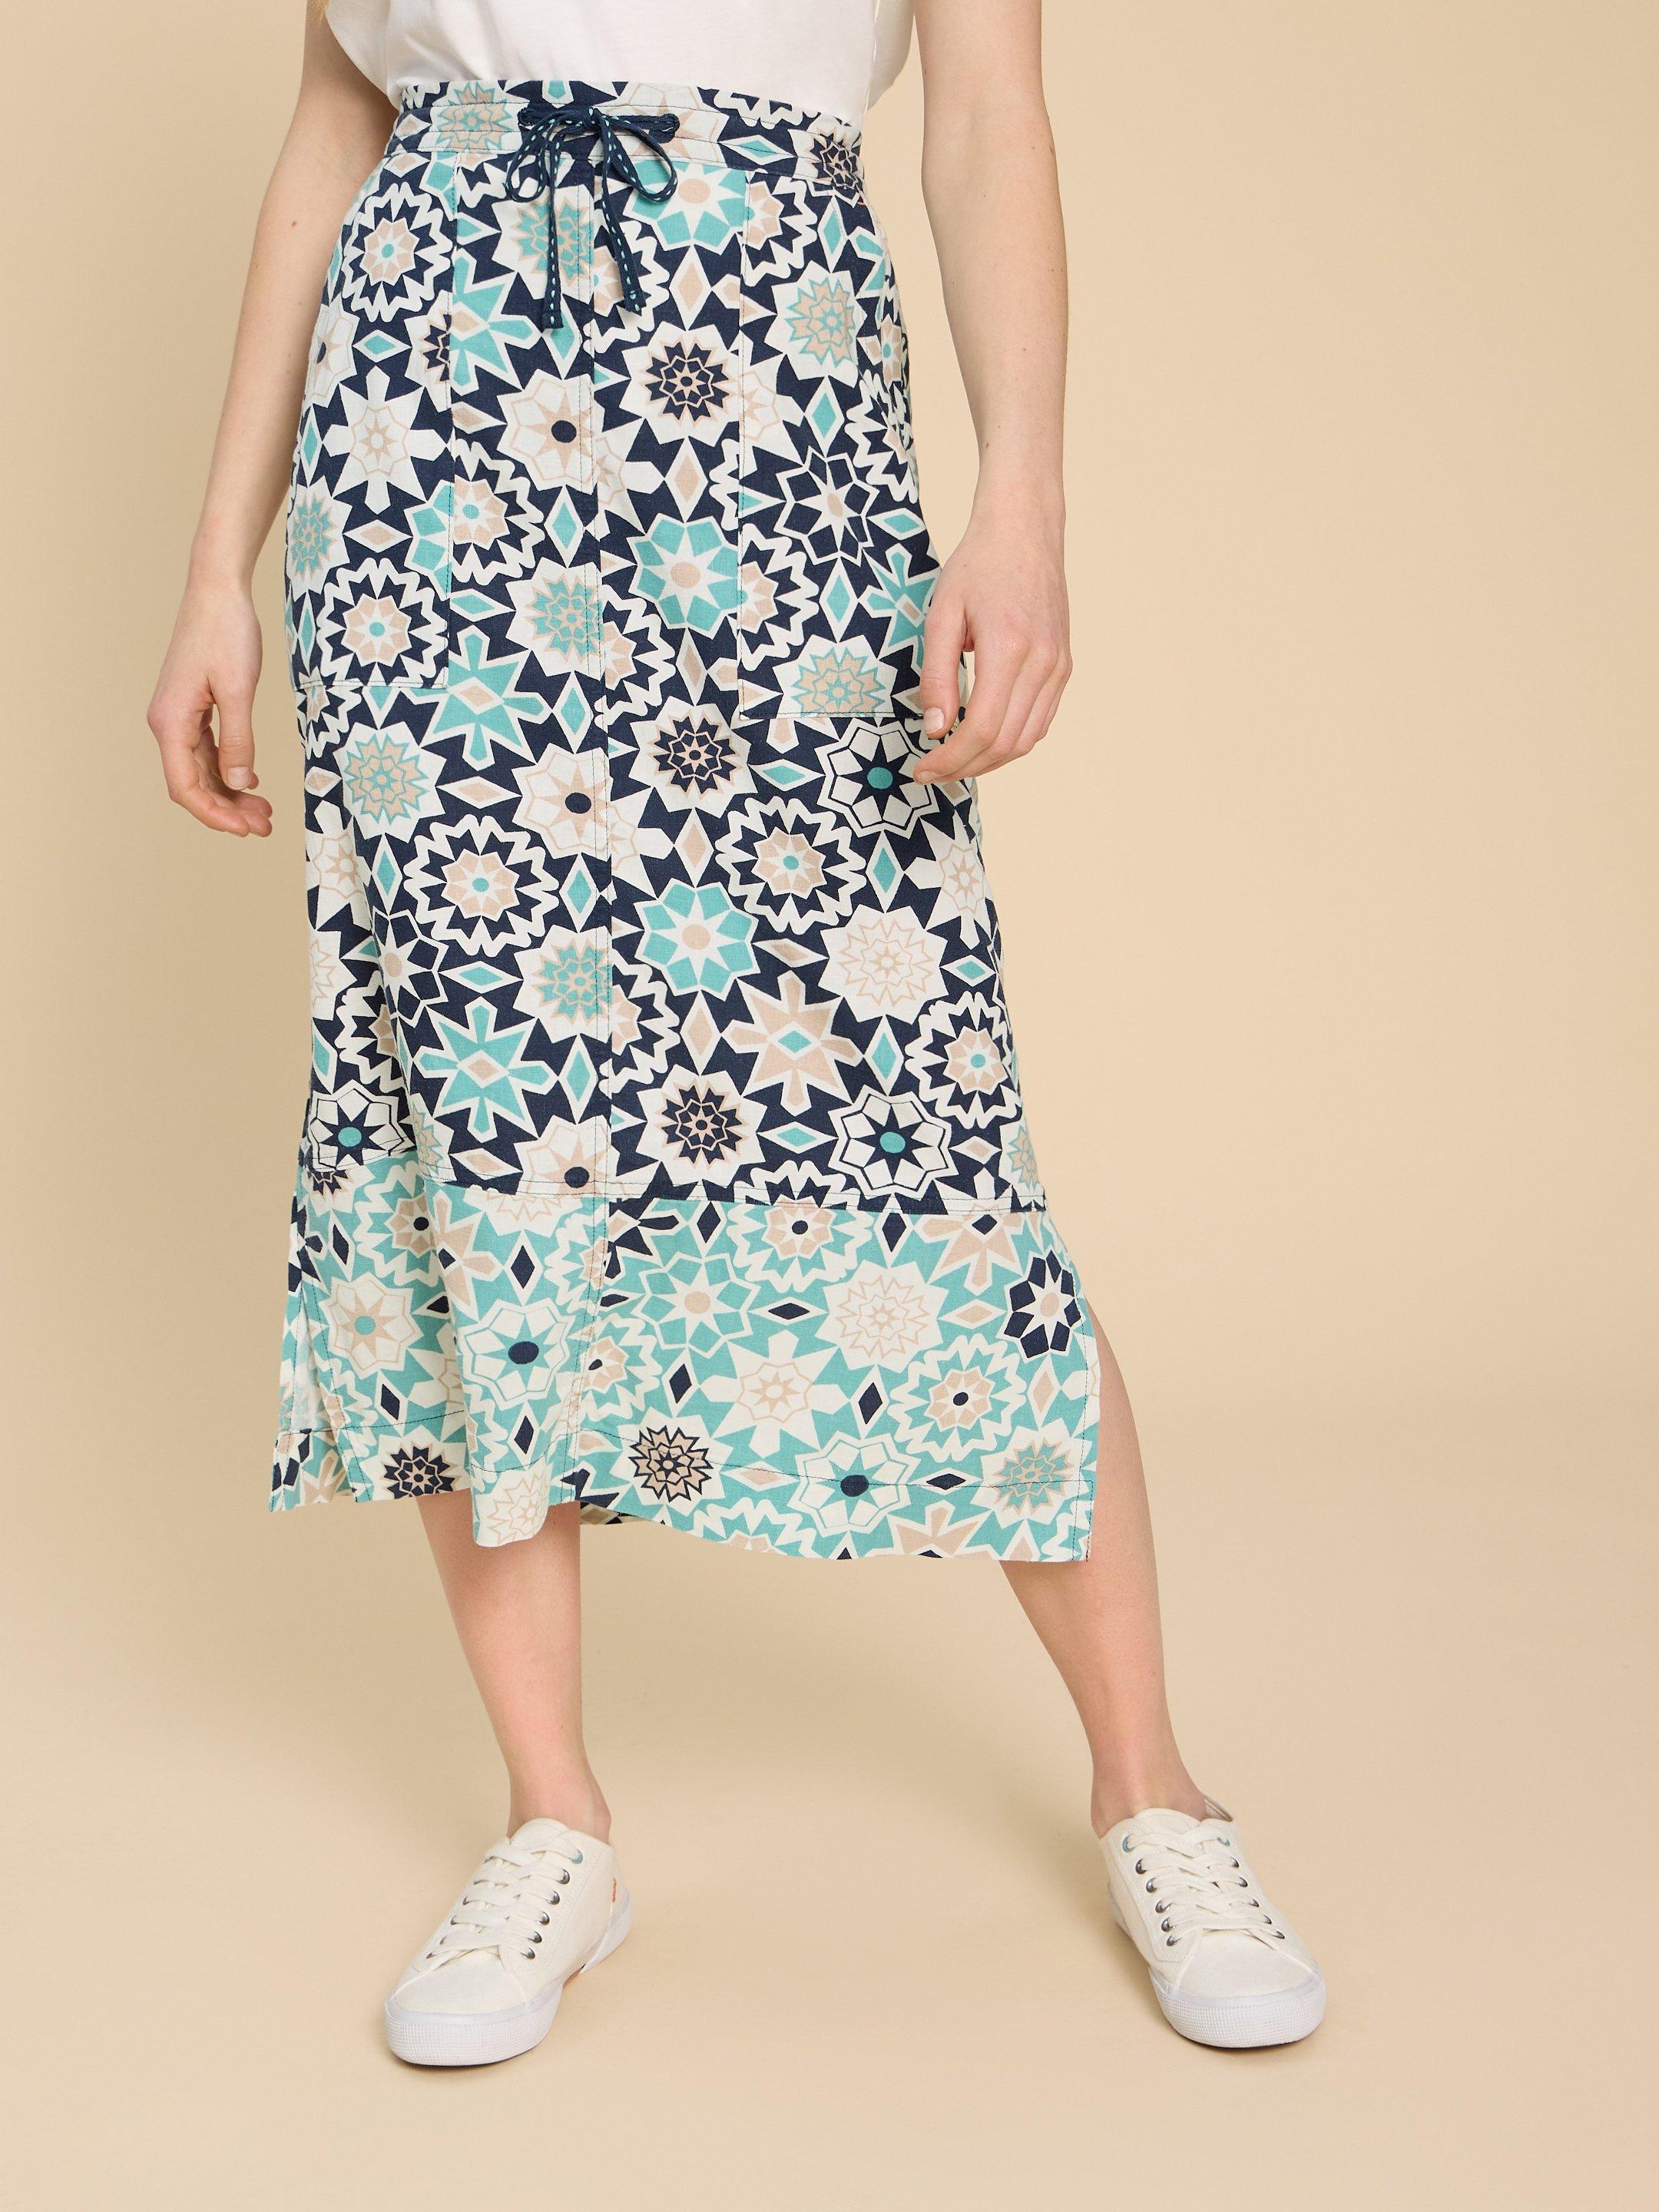 Elle Linen Blend Skirt in NAVY PR - MODEL DETAIL